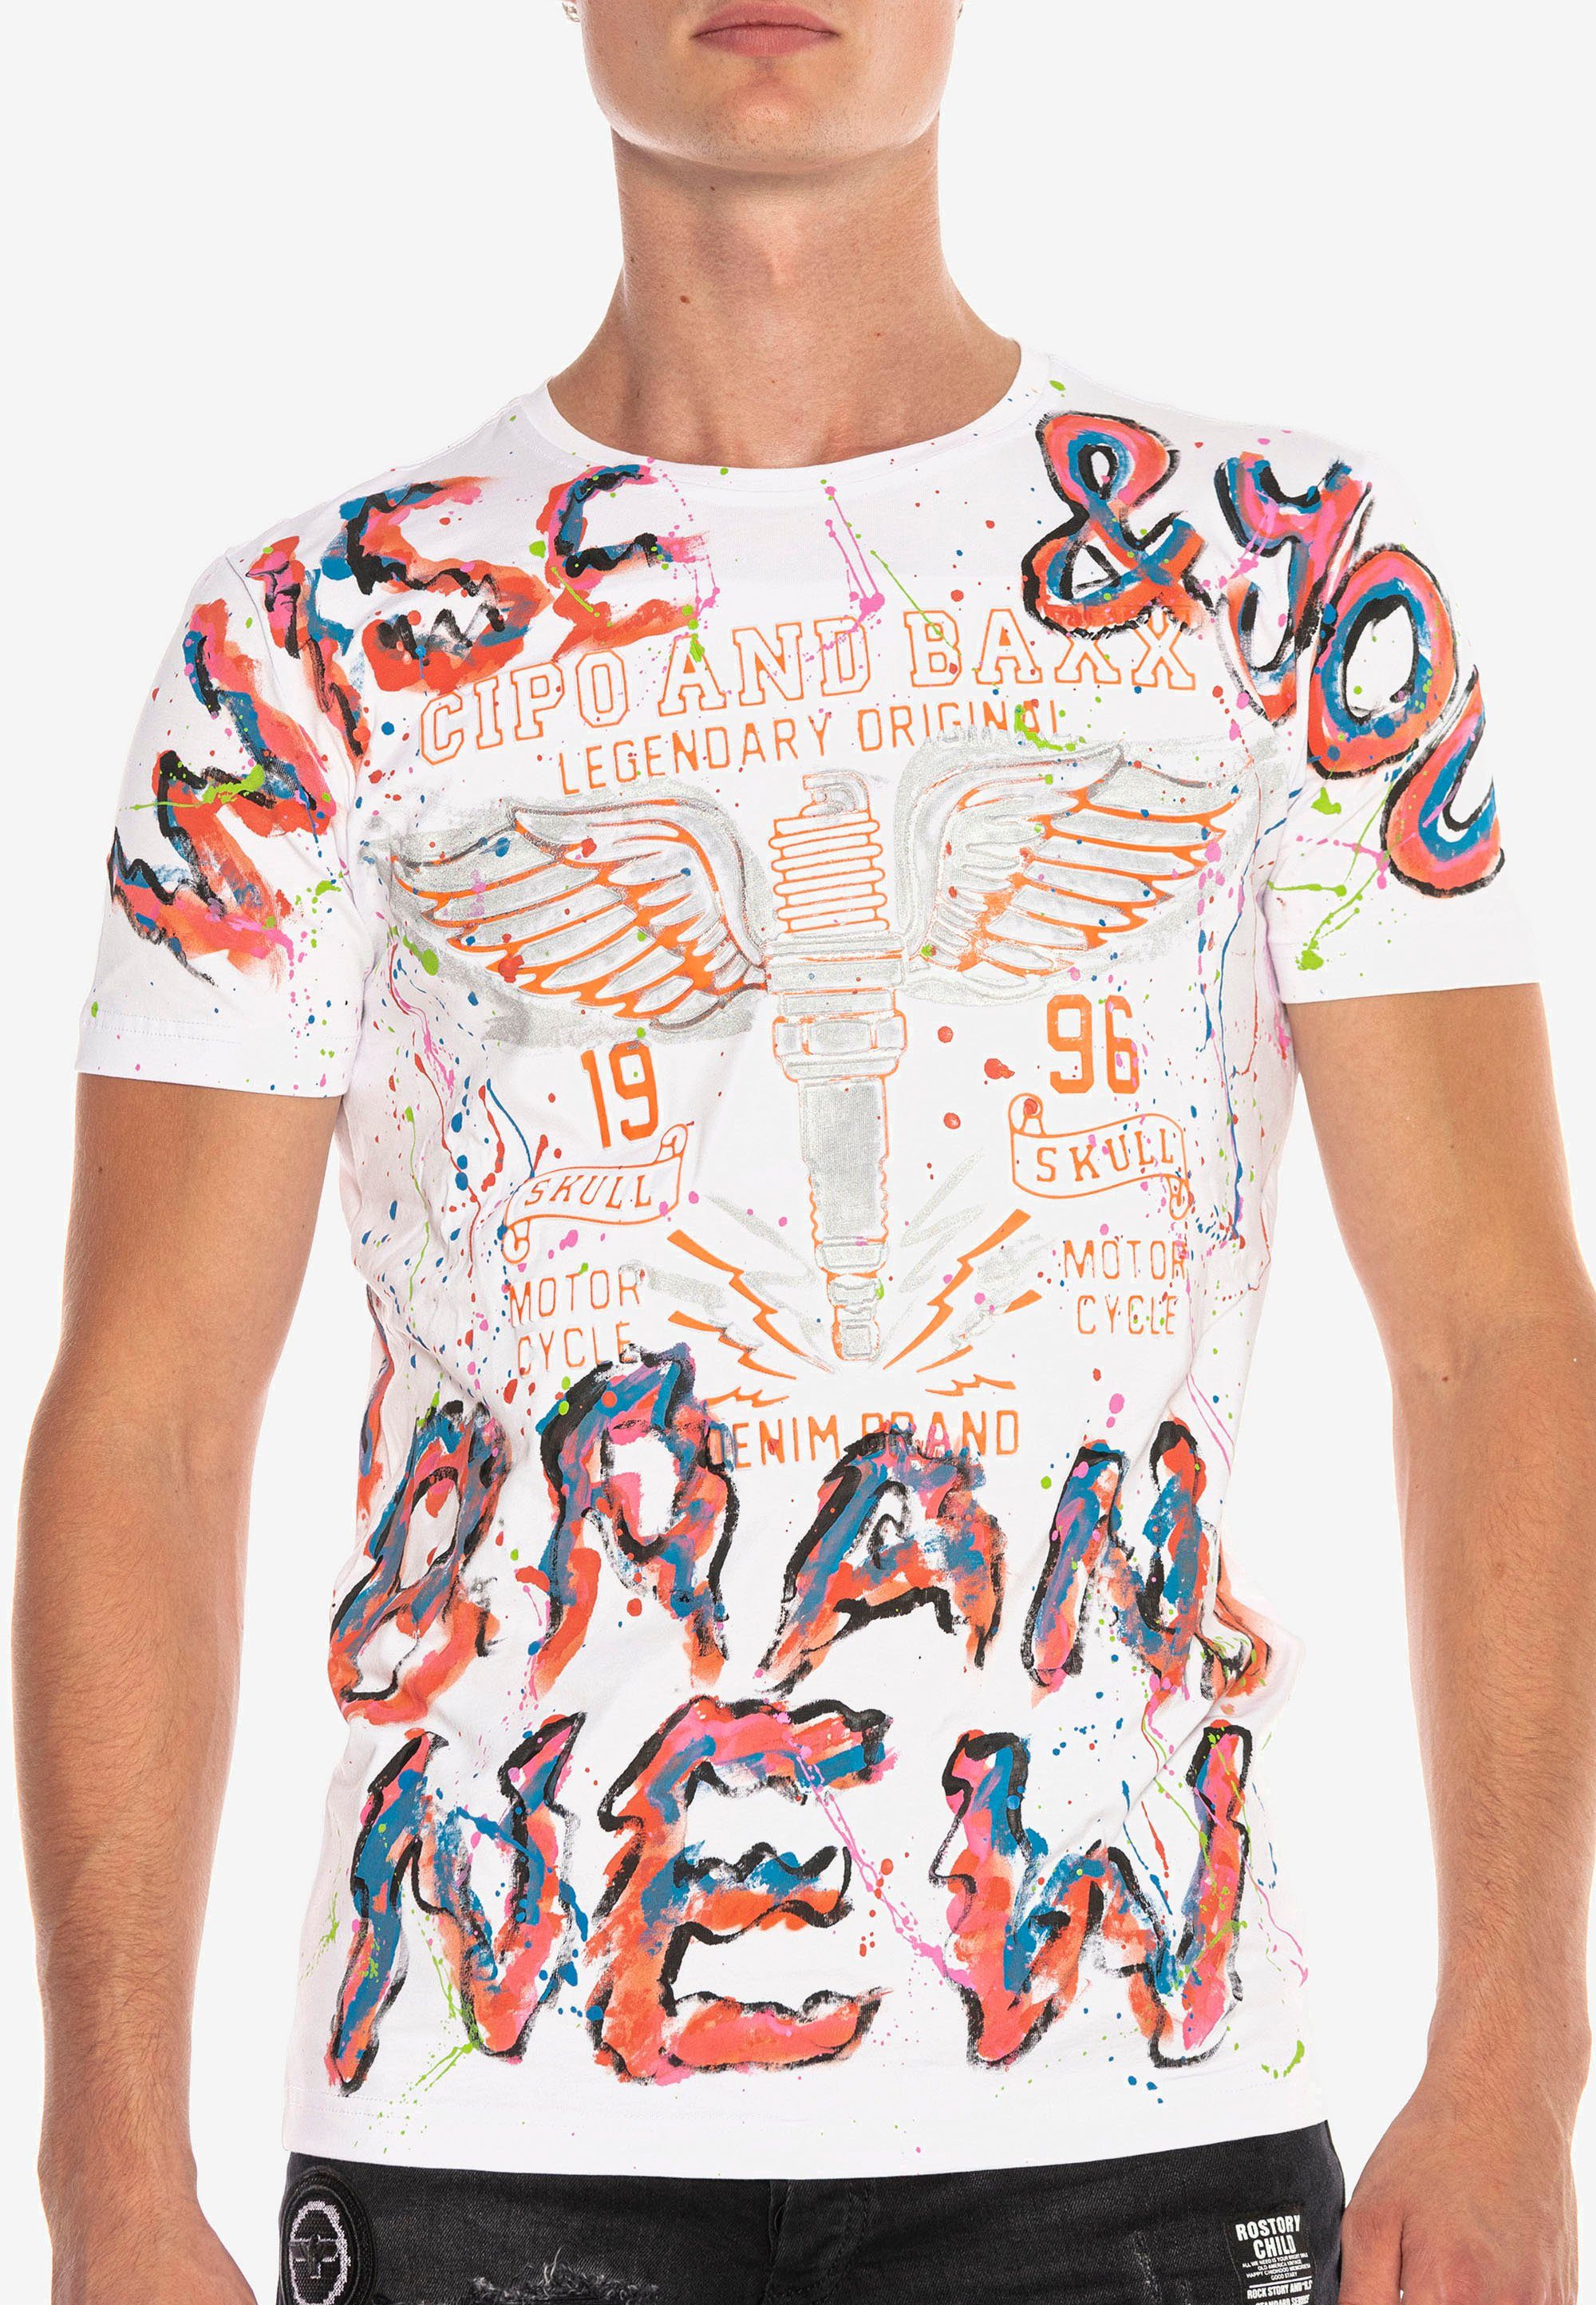 & trendigen im Cipo Handpaint-Design T-Shirt Baxx